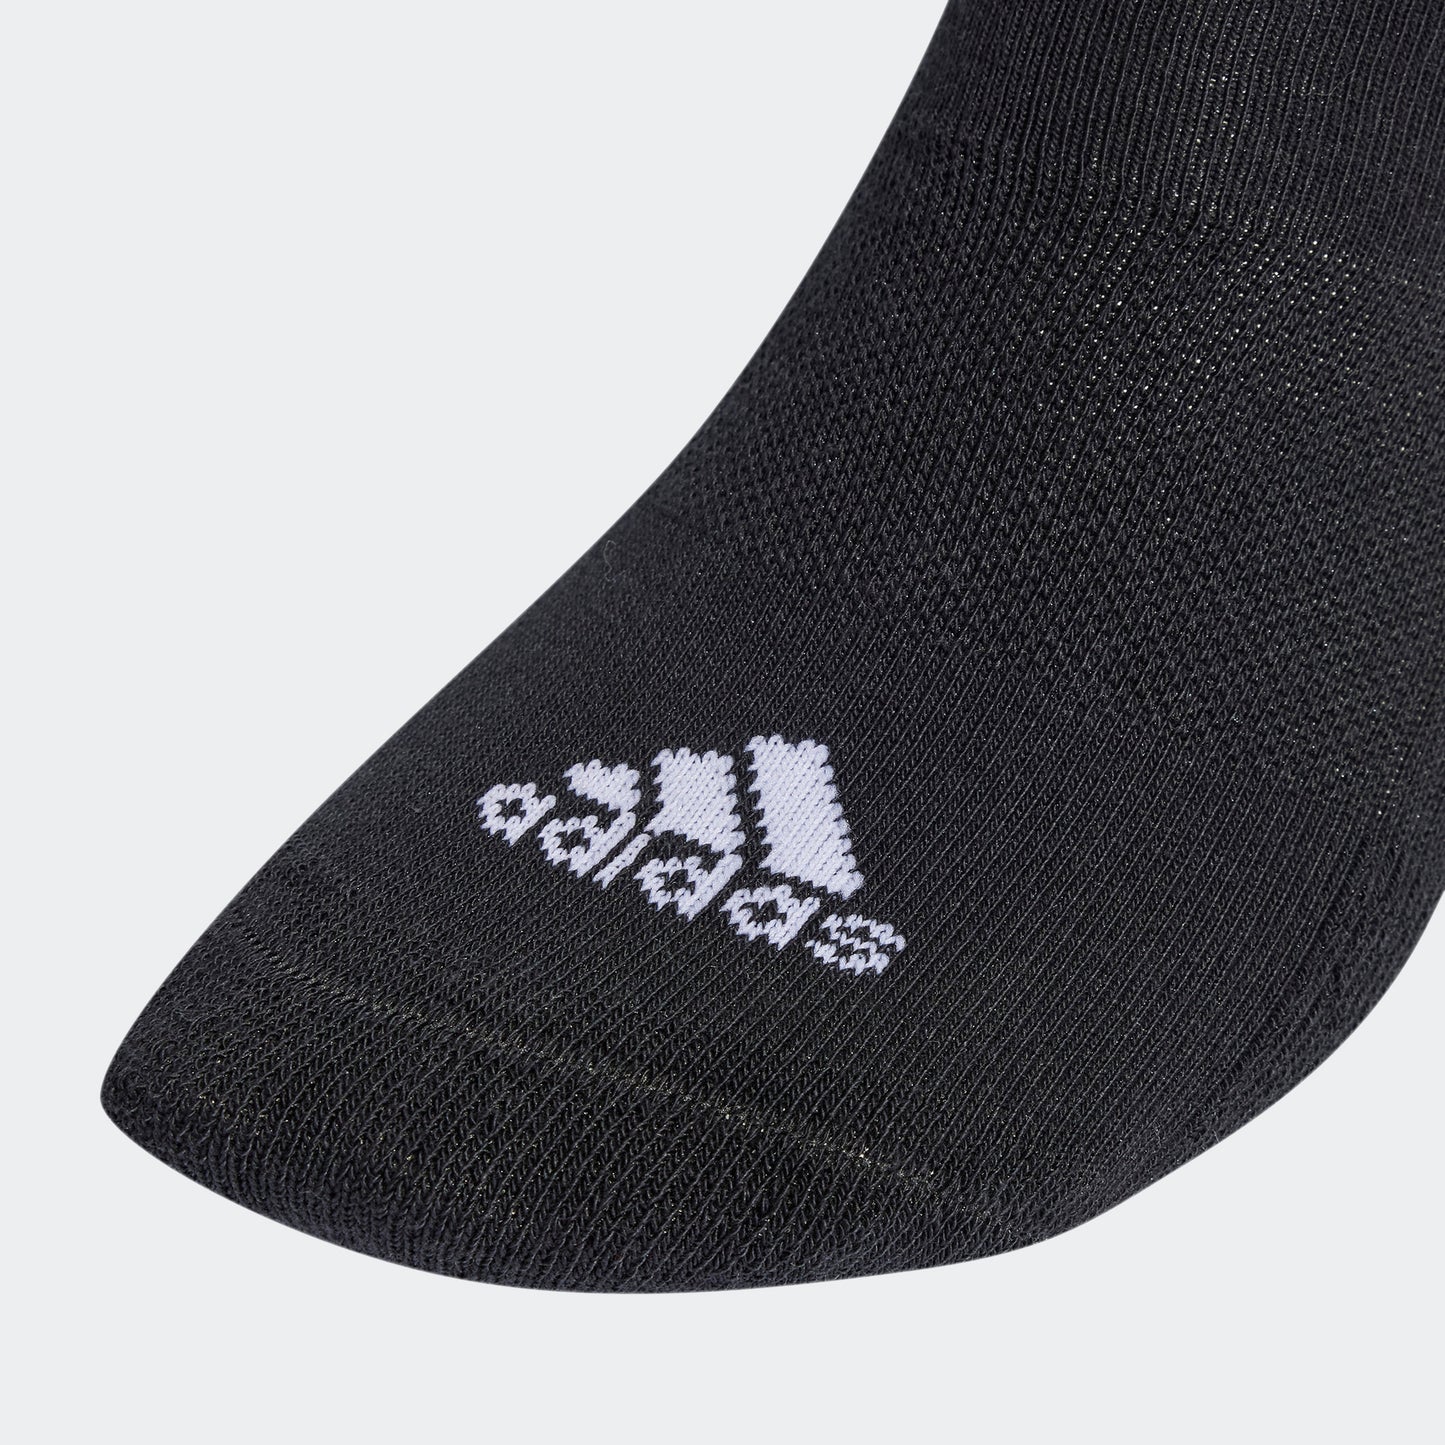 מארז שלישיית גרביים לגברים STRIPES CUSHIONED SPORTSWEAR MID-CUT בצבע שחור ולבן